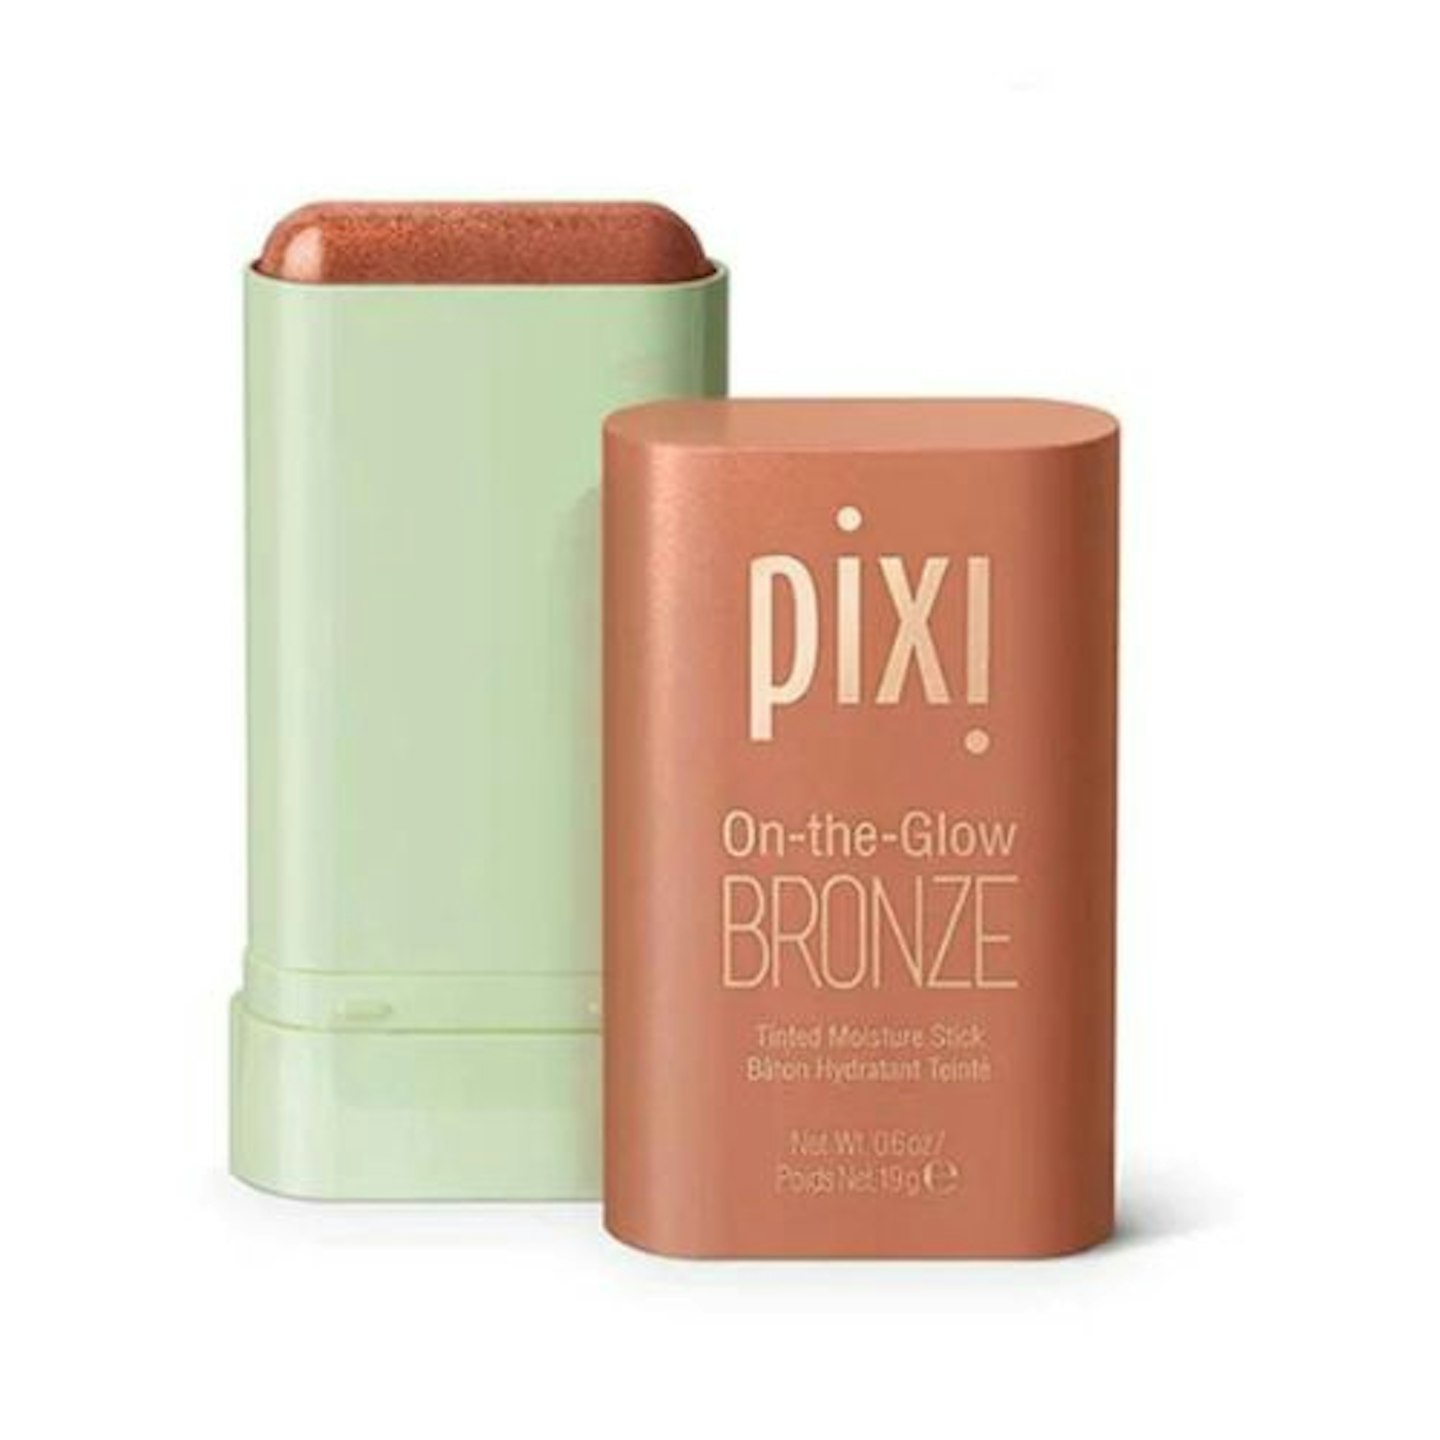 Pixi On-The-Glow Bronze